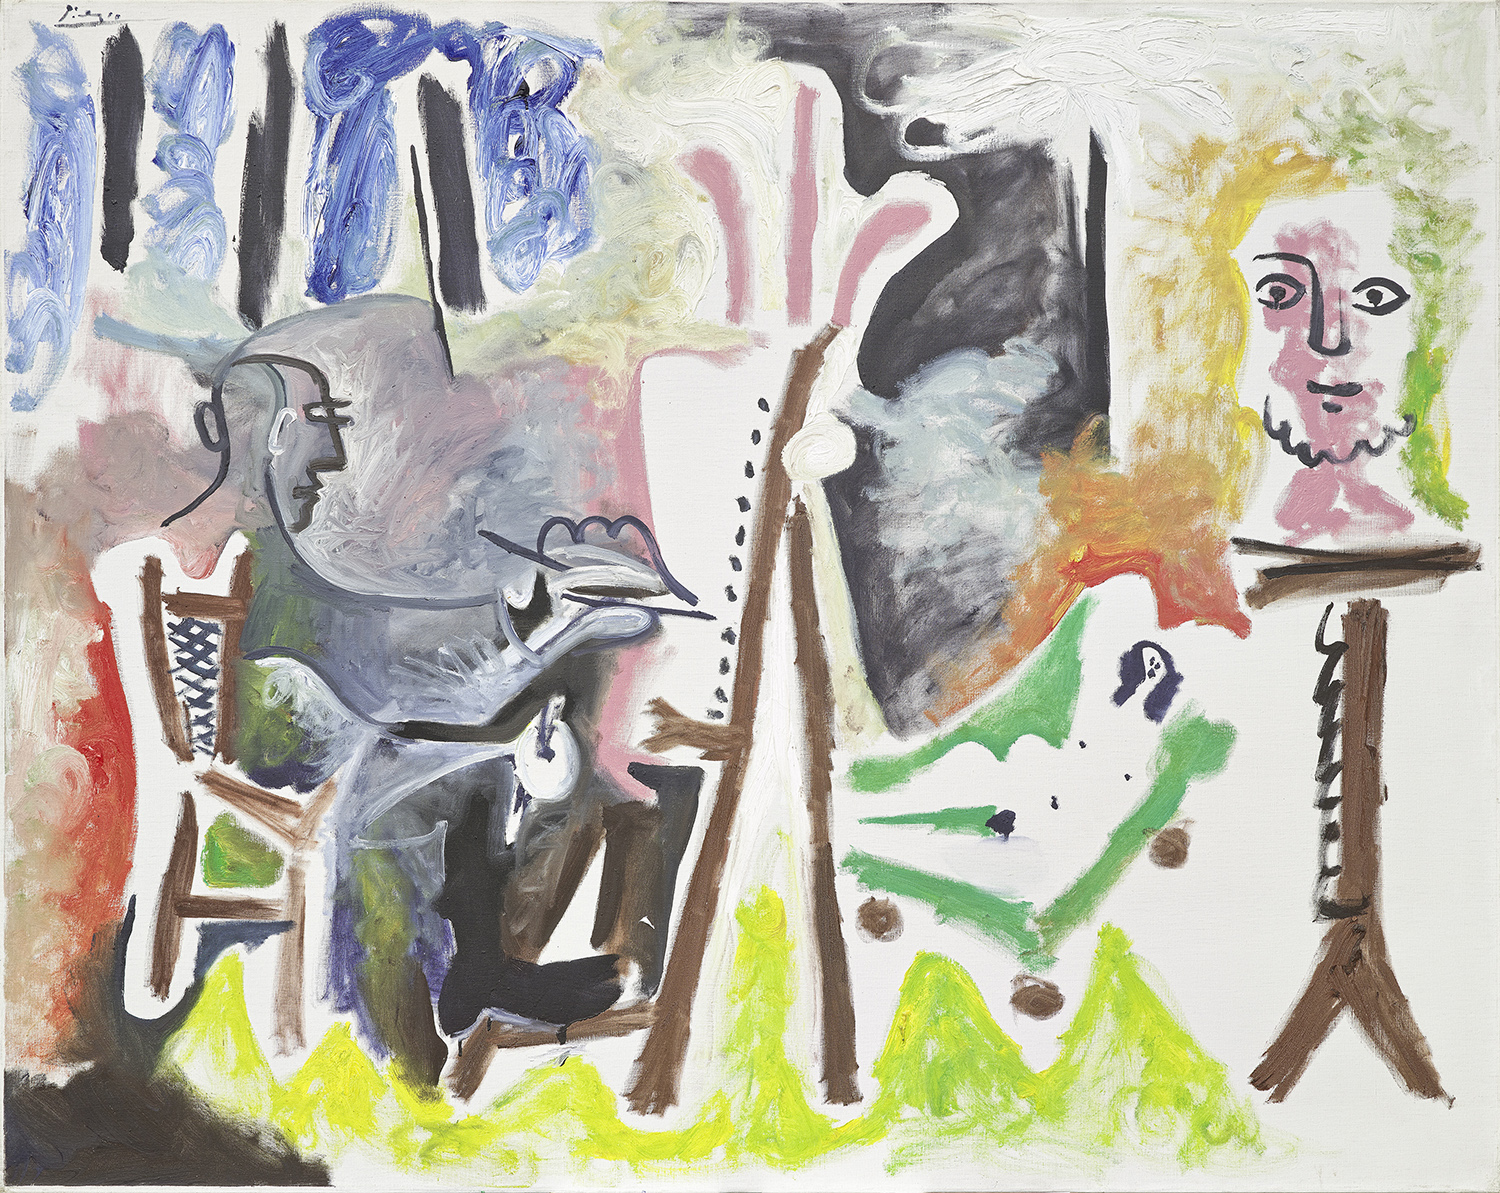 PABLO PICASSO, LE PEINTRE ET SON MODÈLE, 26.3.1963 Öl auf Leinwand, 130 x 162 cm Esther Grether Familiensammlung © Succession Picasso / 2022, ProLitteris, Zürich